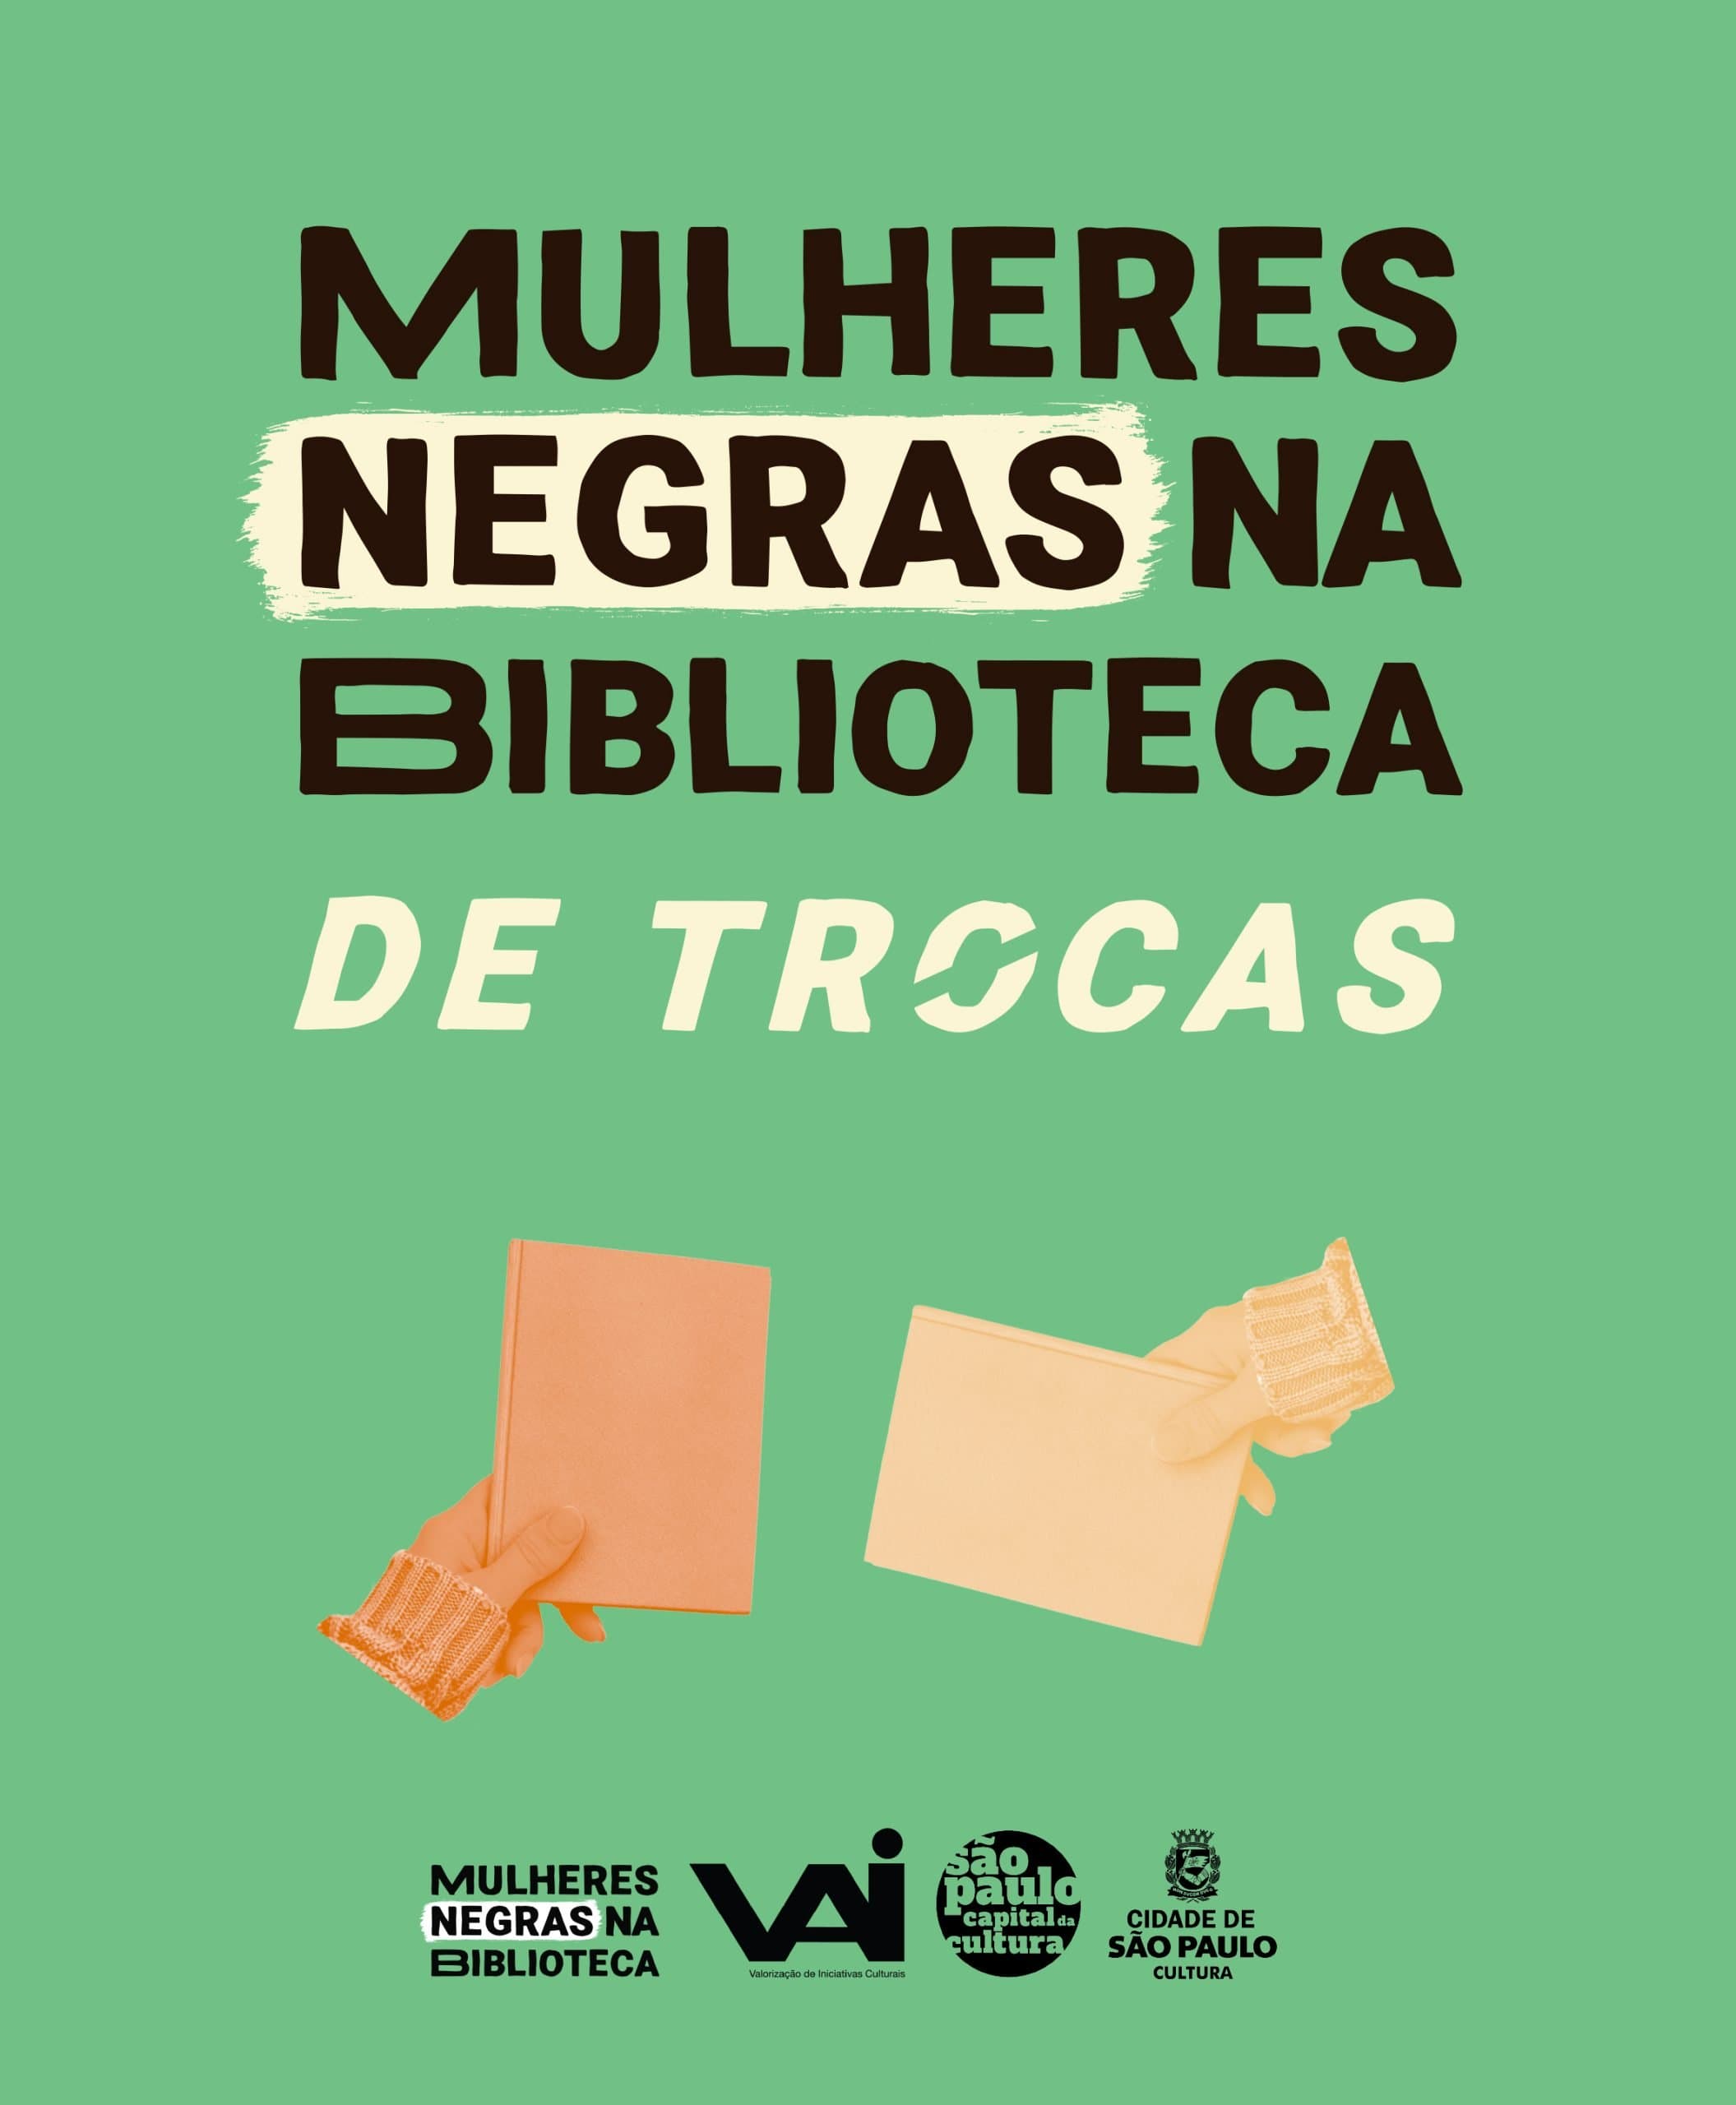 Coletivo de incentivo á leitura lança a primeira biblioteca do Brasil de troca de livros de autoras negras